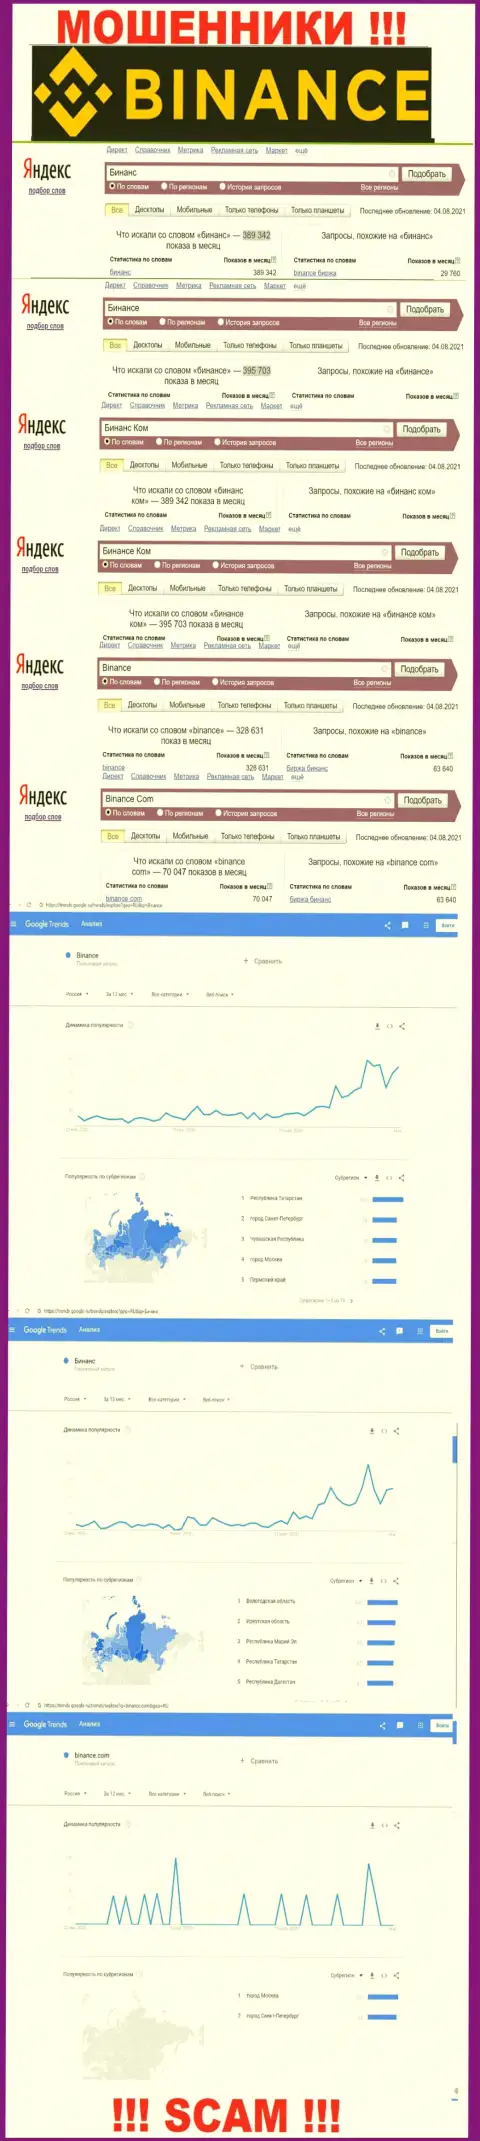 Статистические показатели о запросах в поисковиках глобальной сети internet данных о компании Бинансе